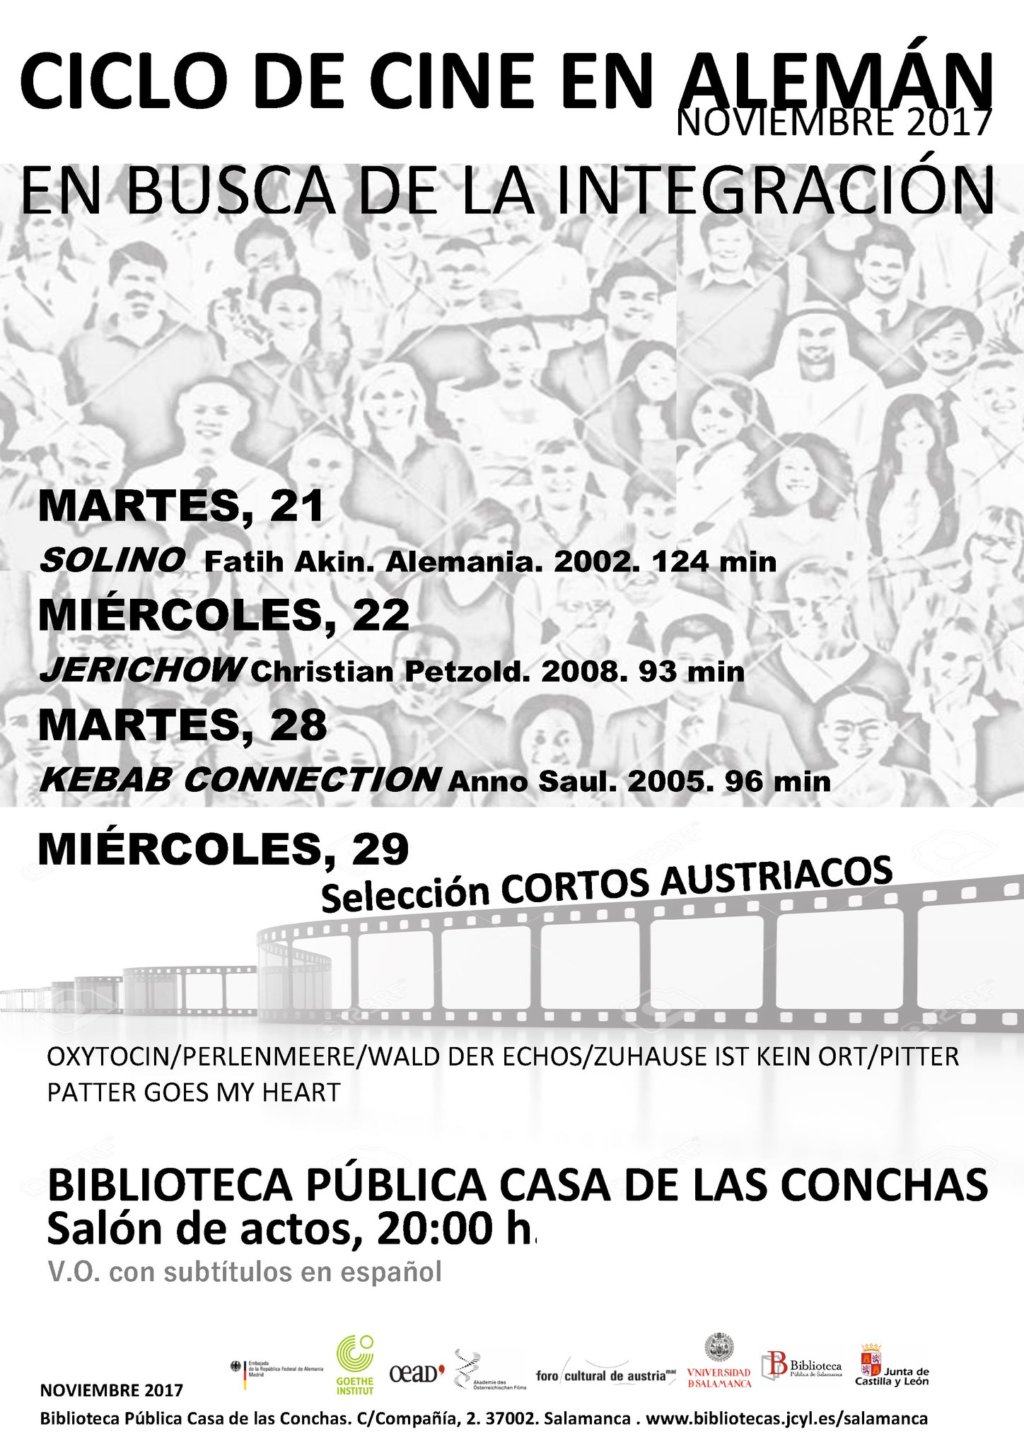 Casa de las Conchas Ciclo de Cine en Alemán En busca de la integración Salamanca Noviembre 2017